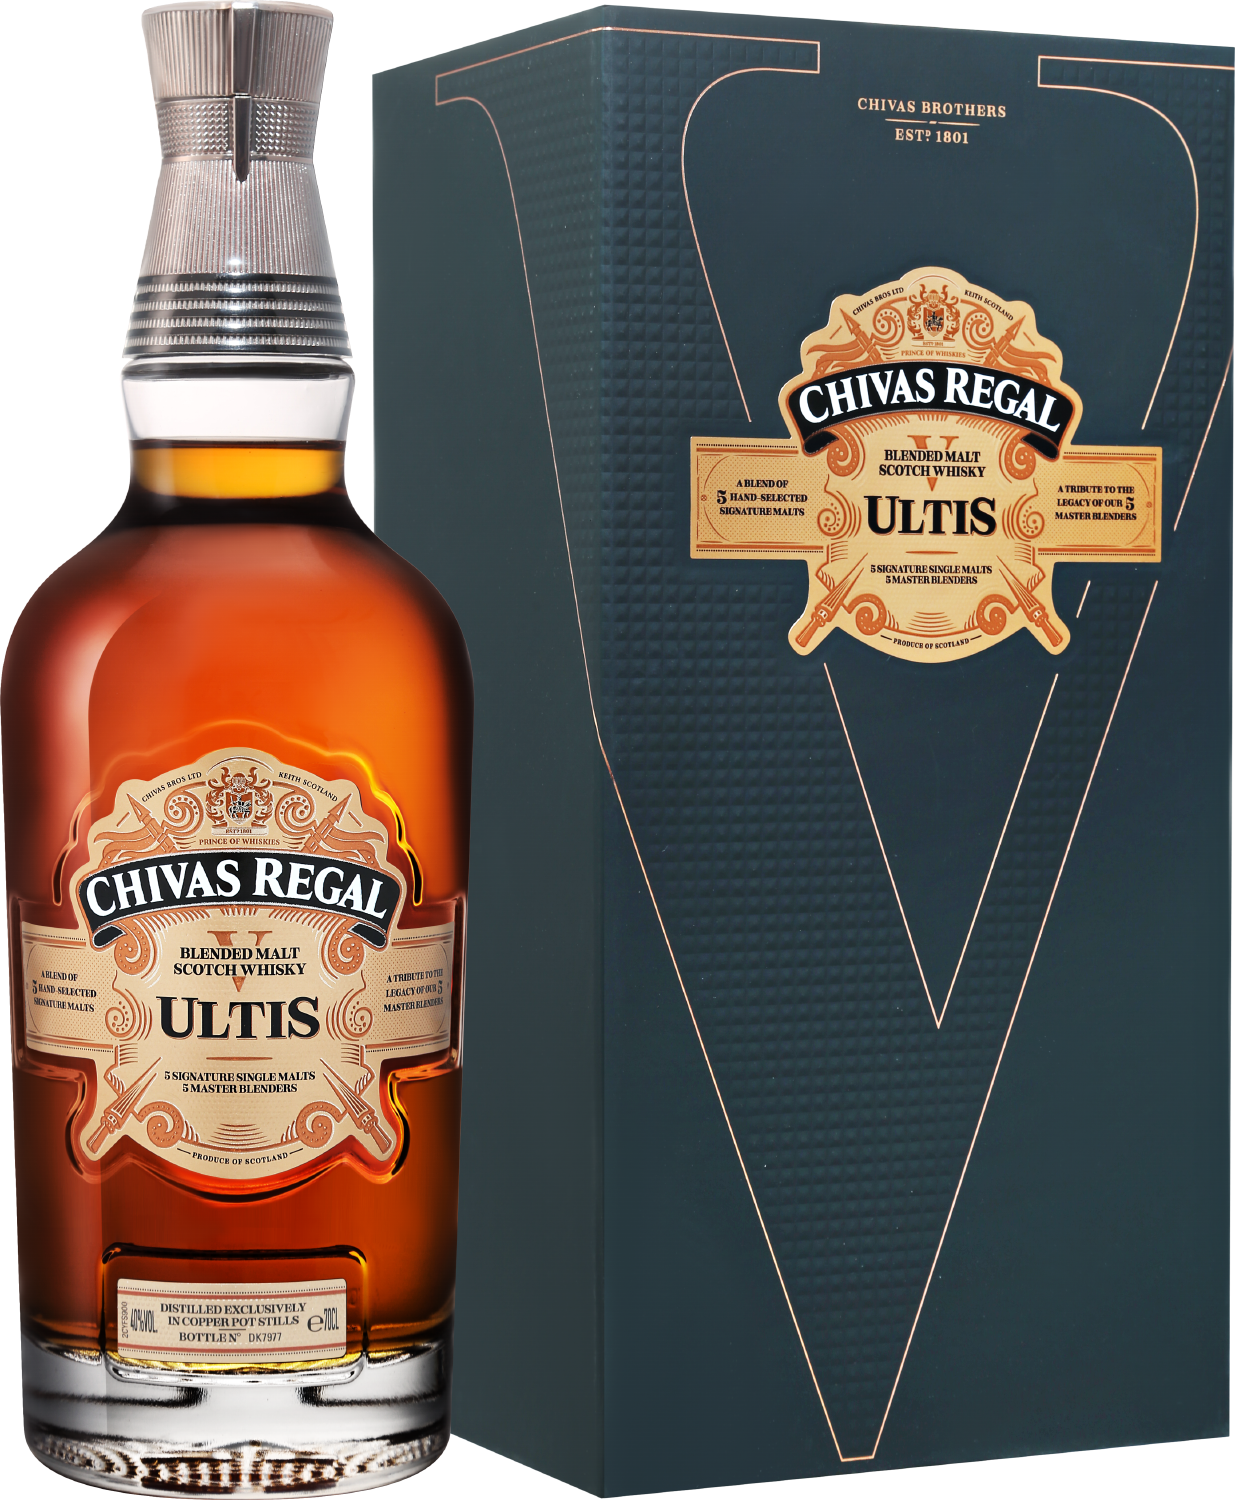 Chivas Regal Ultis Blended Malt Scotch Whisky (gift box) the naked grouse blended malt scotch whisky gift box